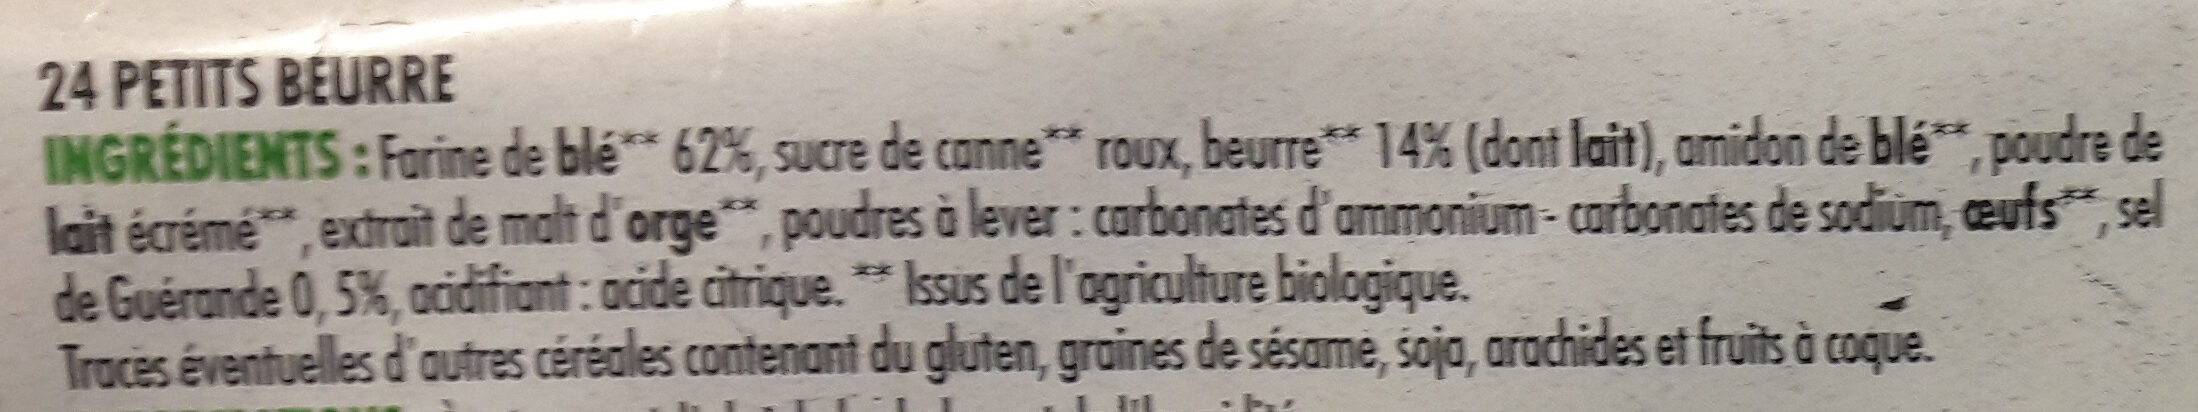 Petit beurre - 200g BIO - Ingrédients